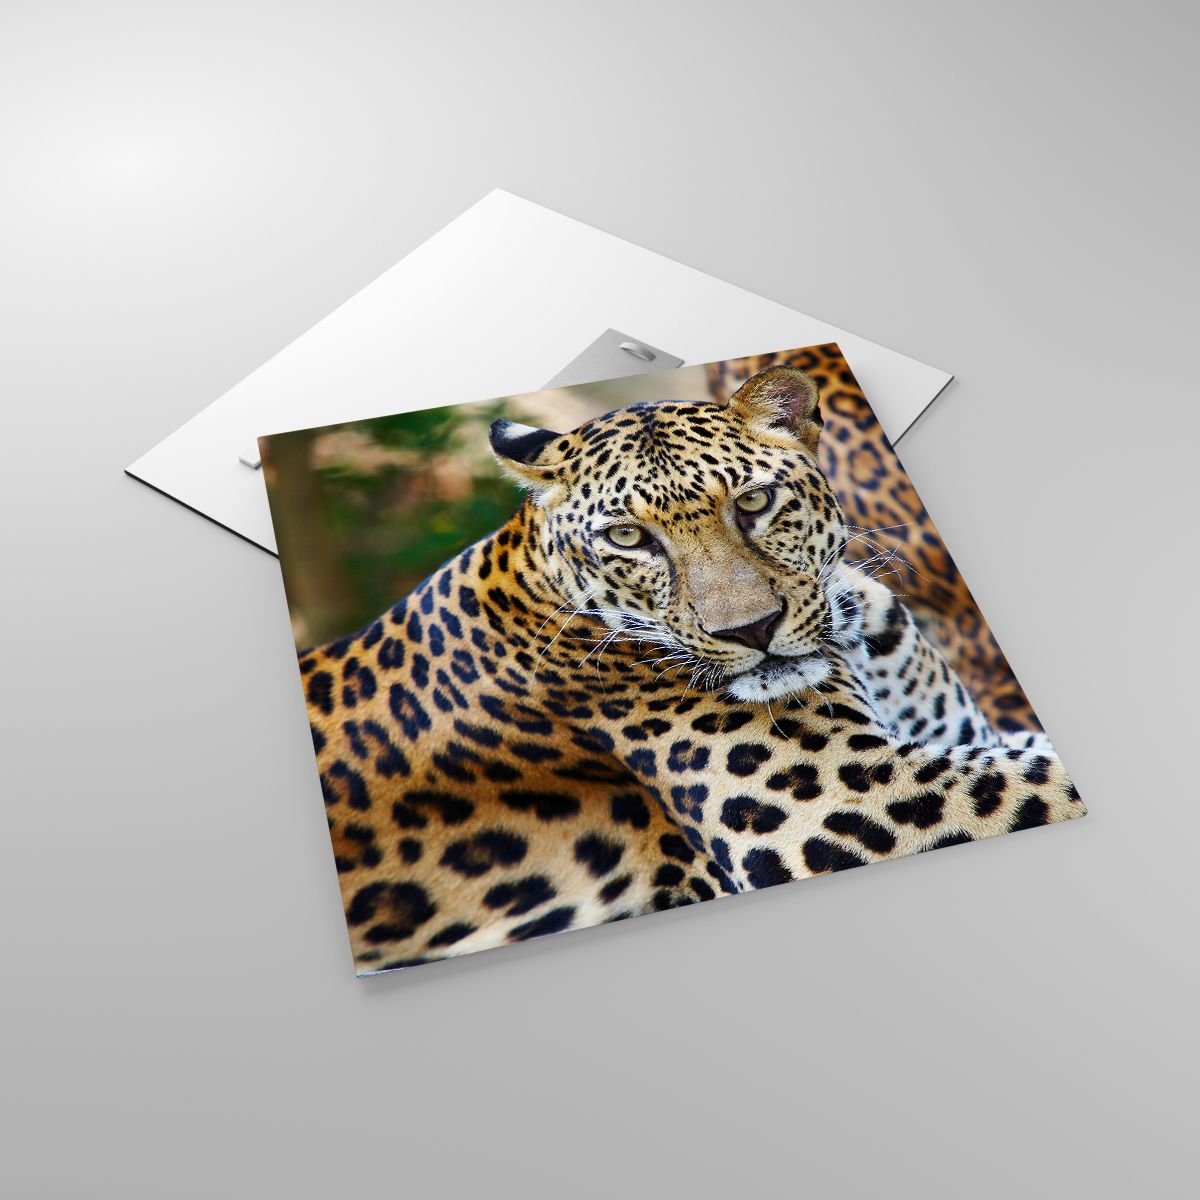 Glasbild Tiere, Glasbild Leopard, Glasbild Afrika, Glasbild Urwald, Glasbild Wildes Tier